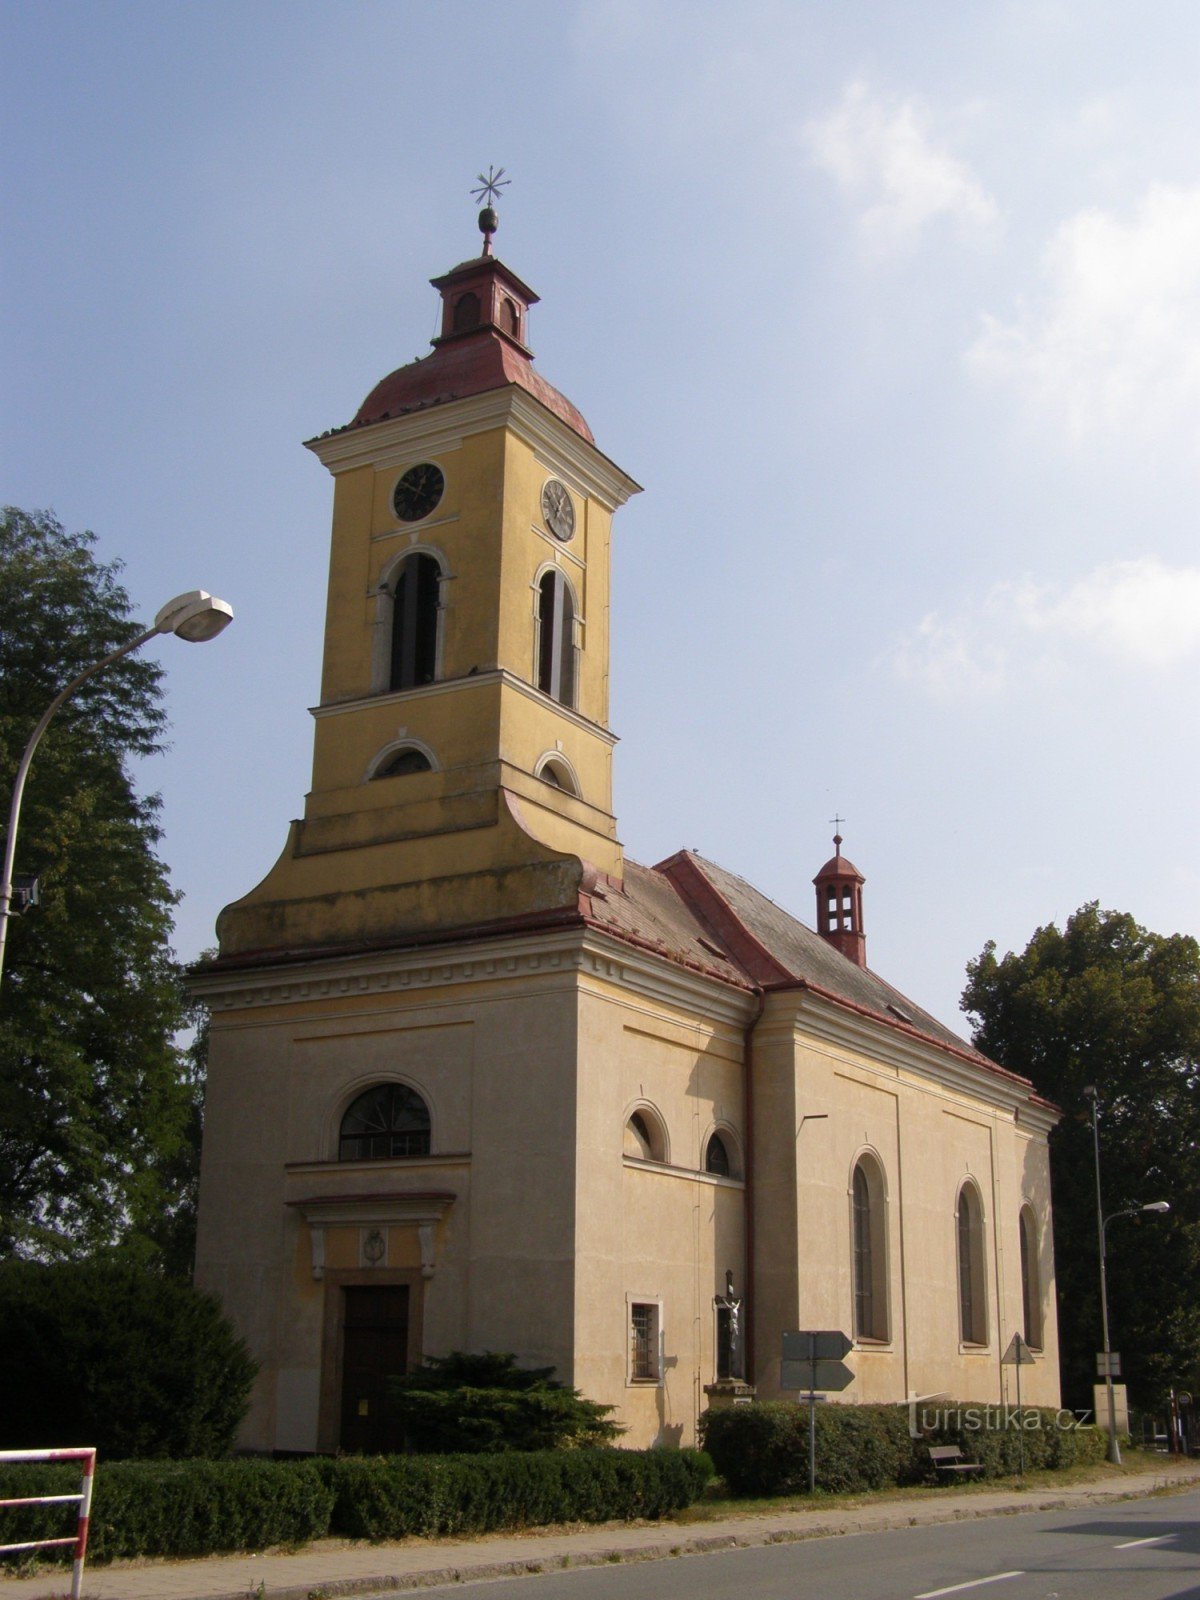 Štězery - nhà thờ St. Đánh dấu